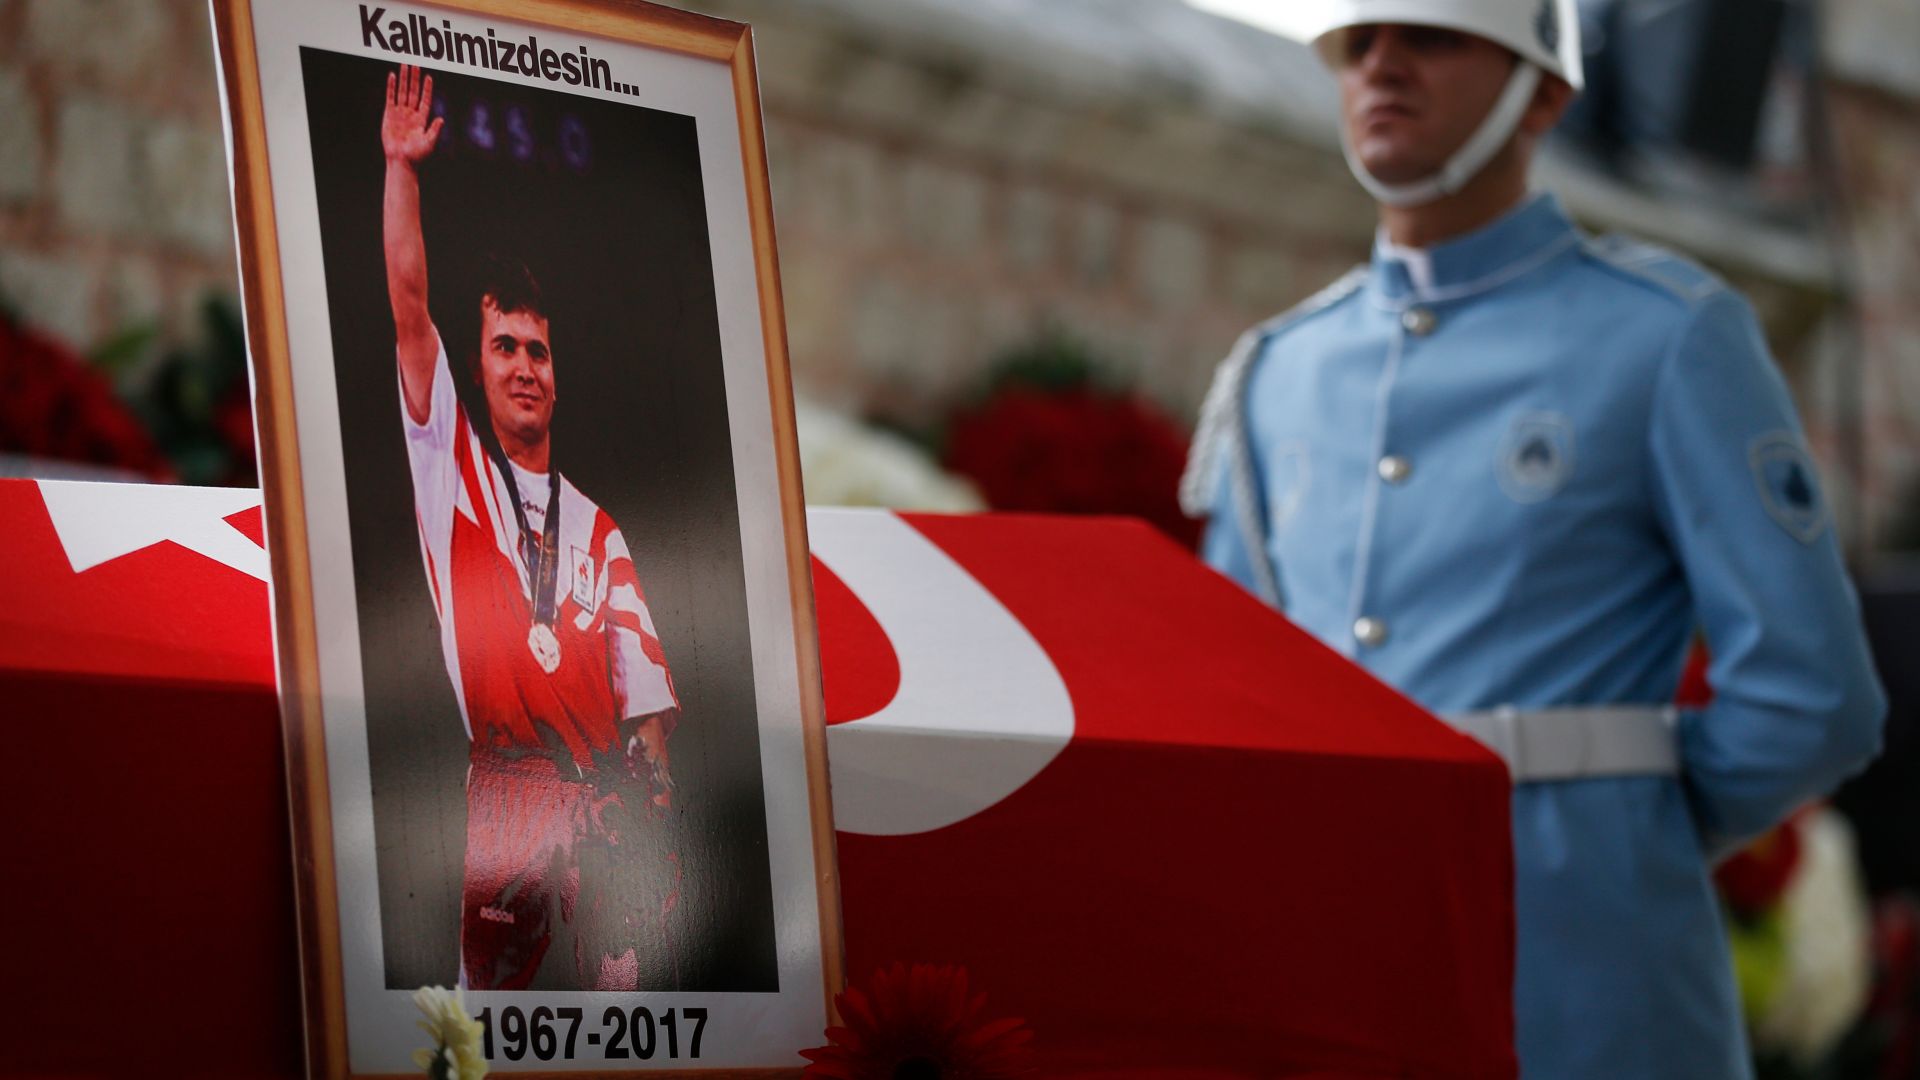 Близо 2 години след кончината на легендарния щангист Наим Сюлейманоглу